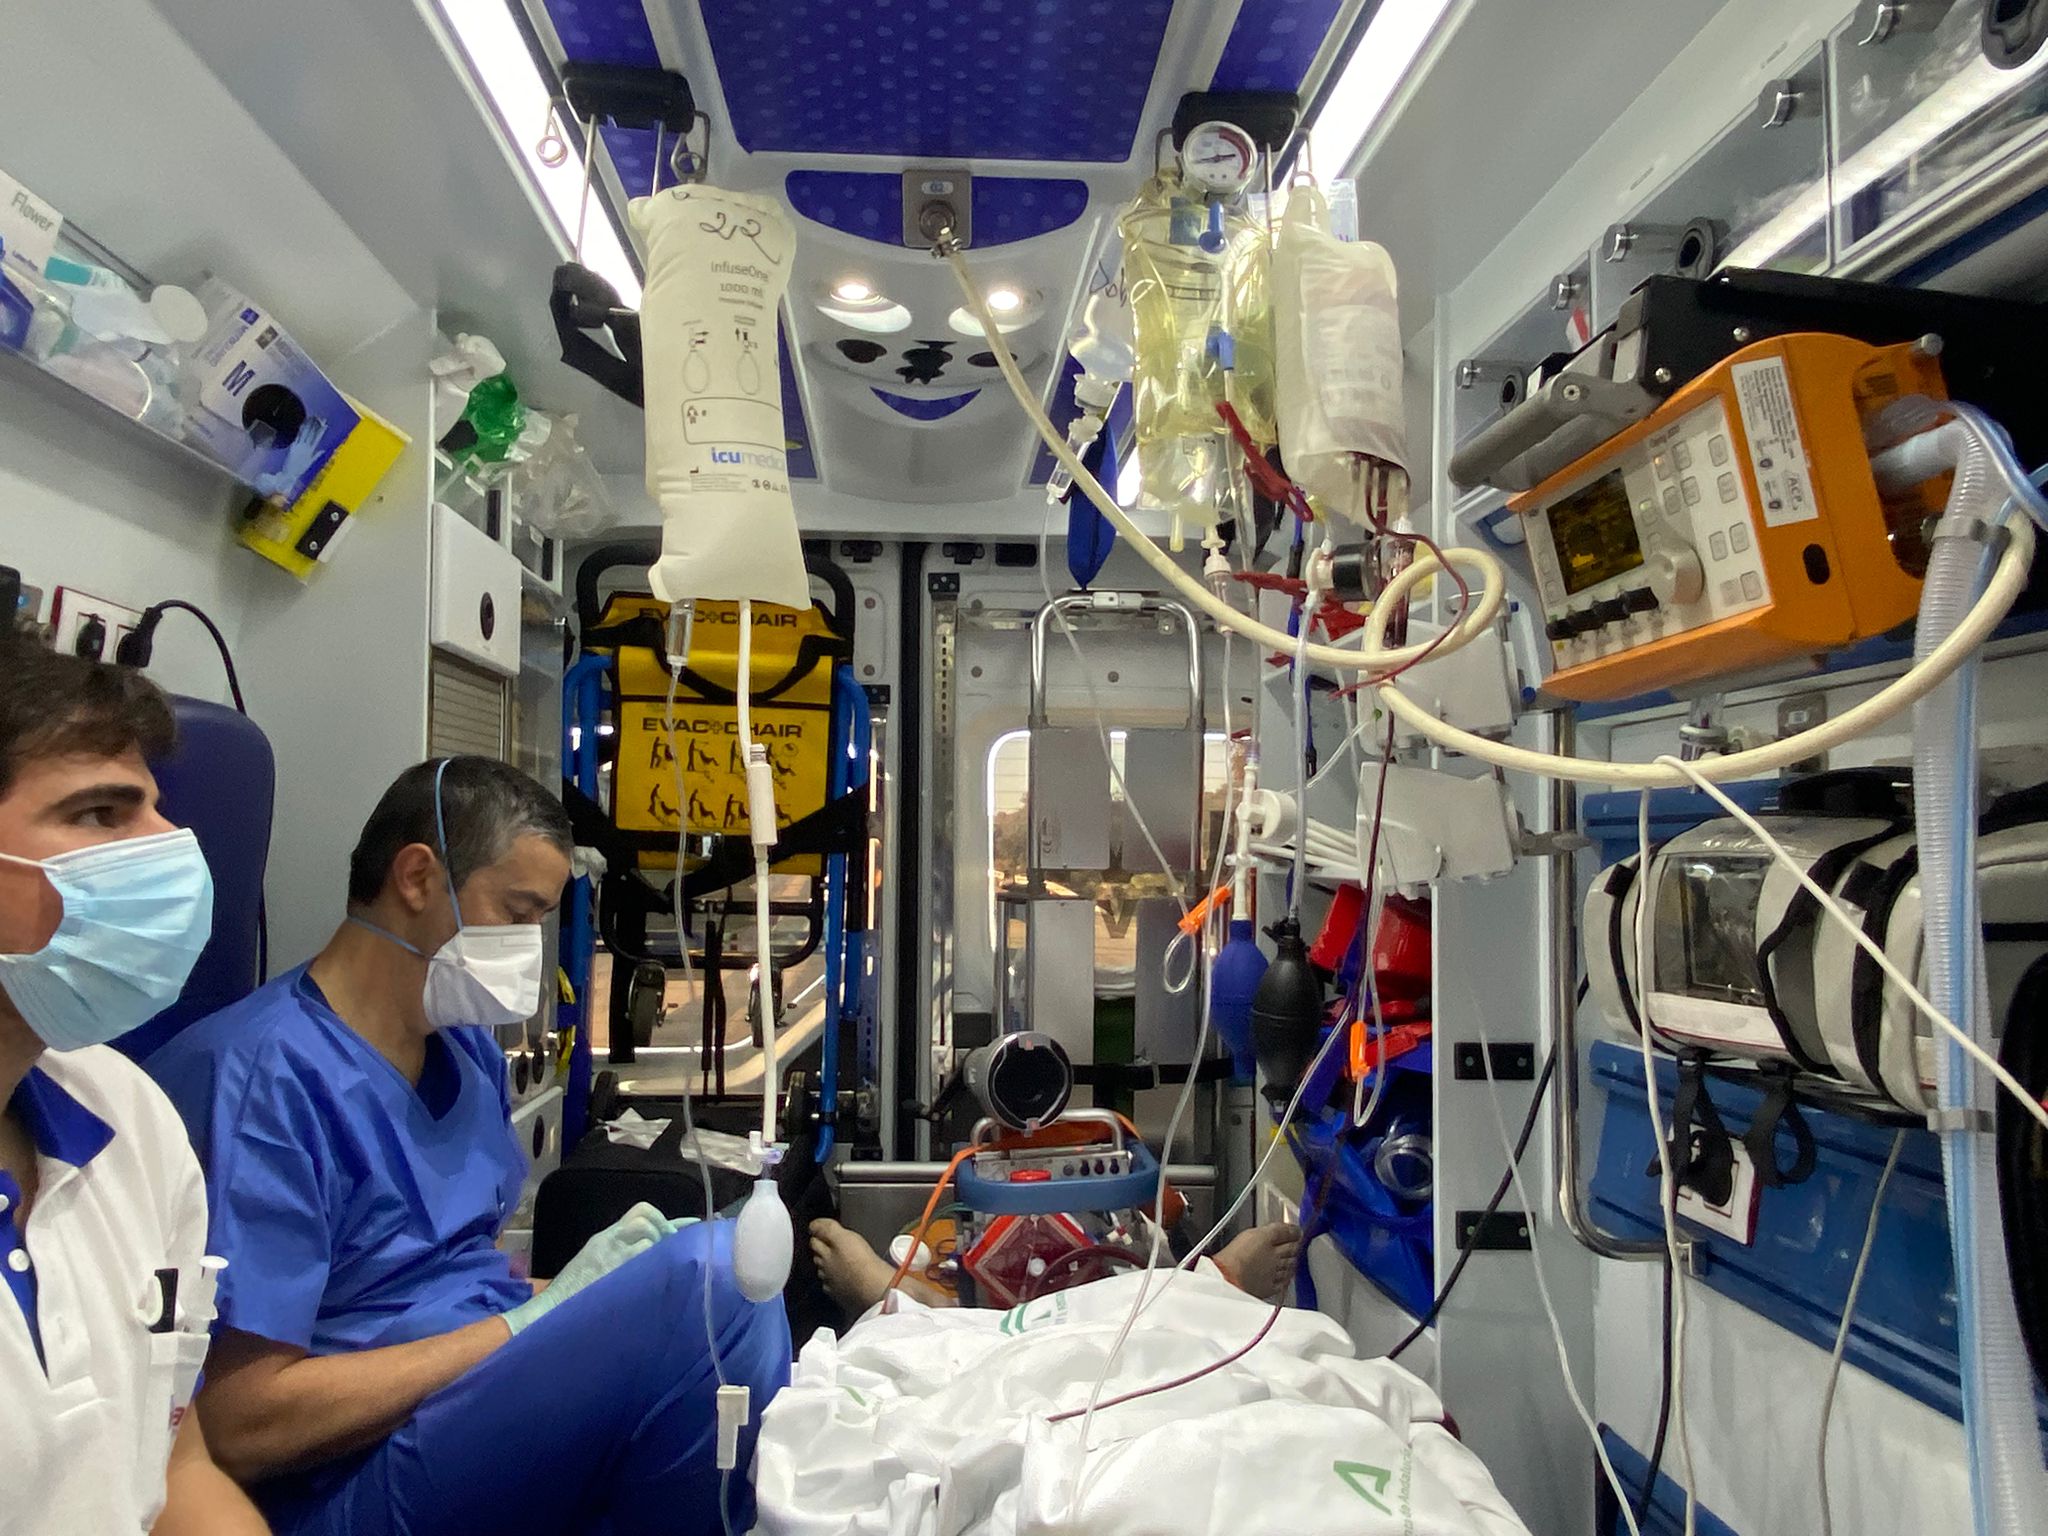 Traslado ECMO Desde el hospital de Riotinto hasta el hospital Virgen del Rocío en Sevilla. Interior ambulancia.